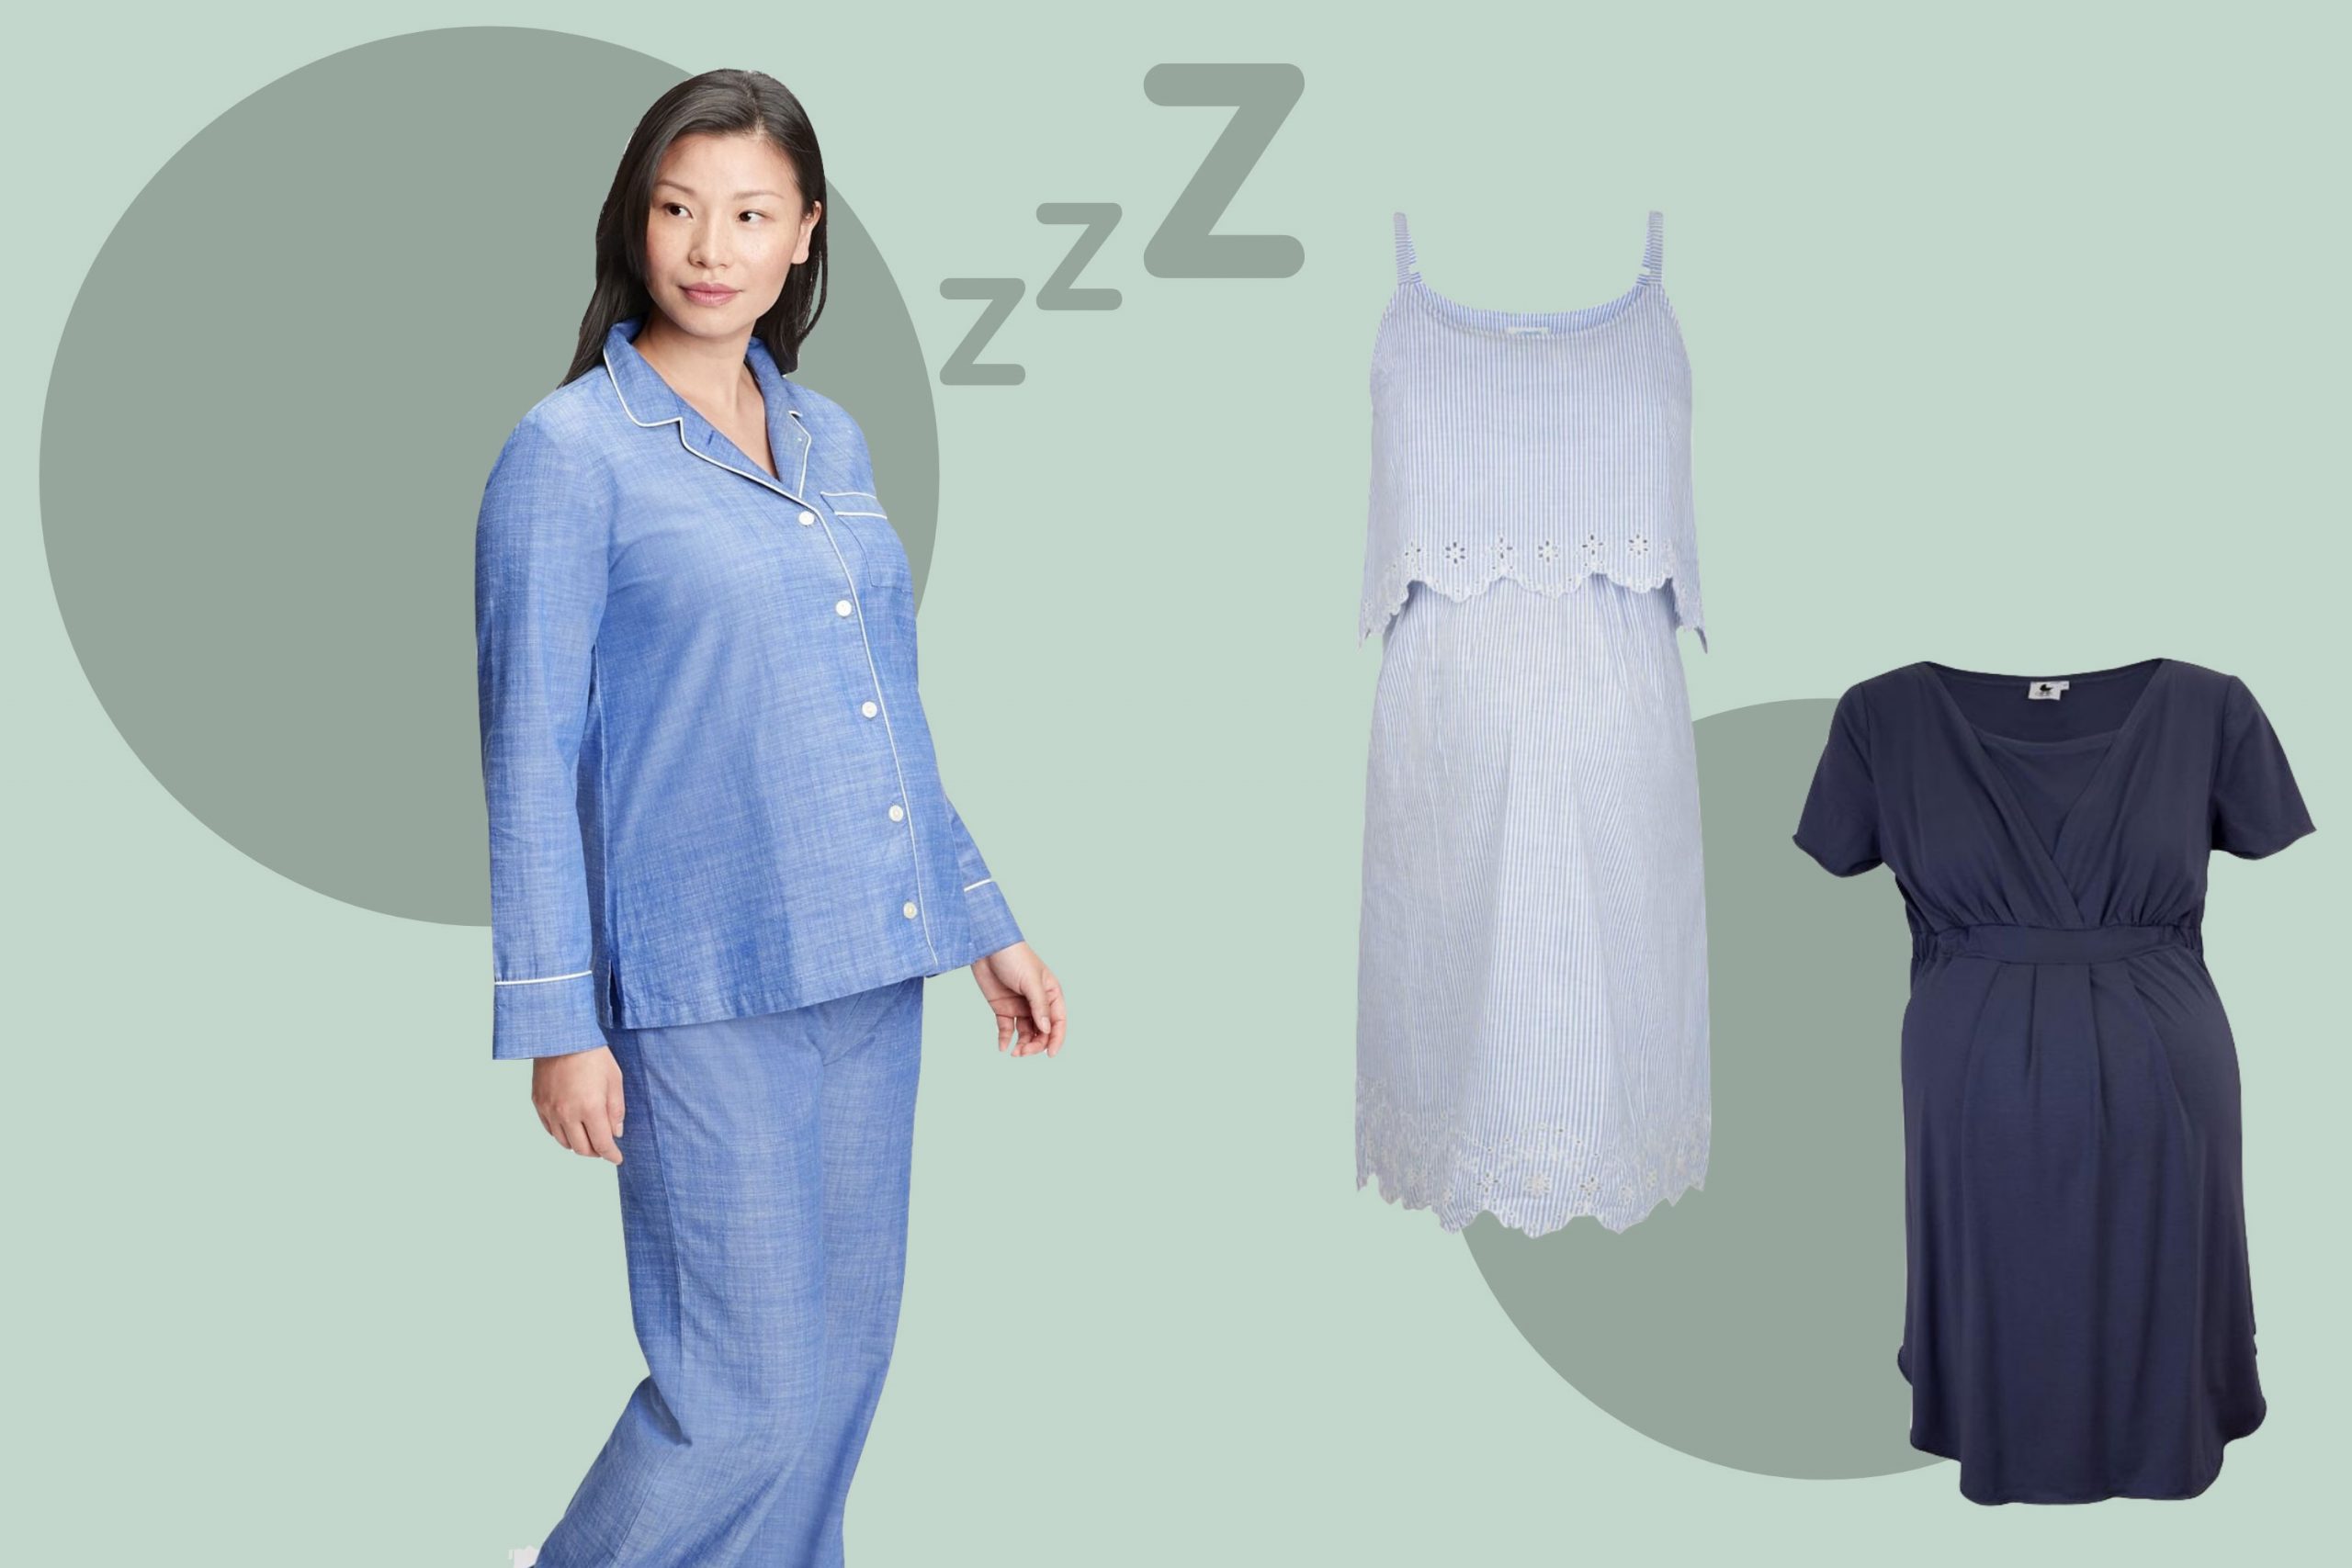 Embrace Your Bump Super Soft 4 Piece Maternity & Nursing Hospital Bag Essentials Pajama Set 